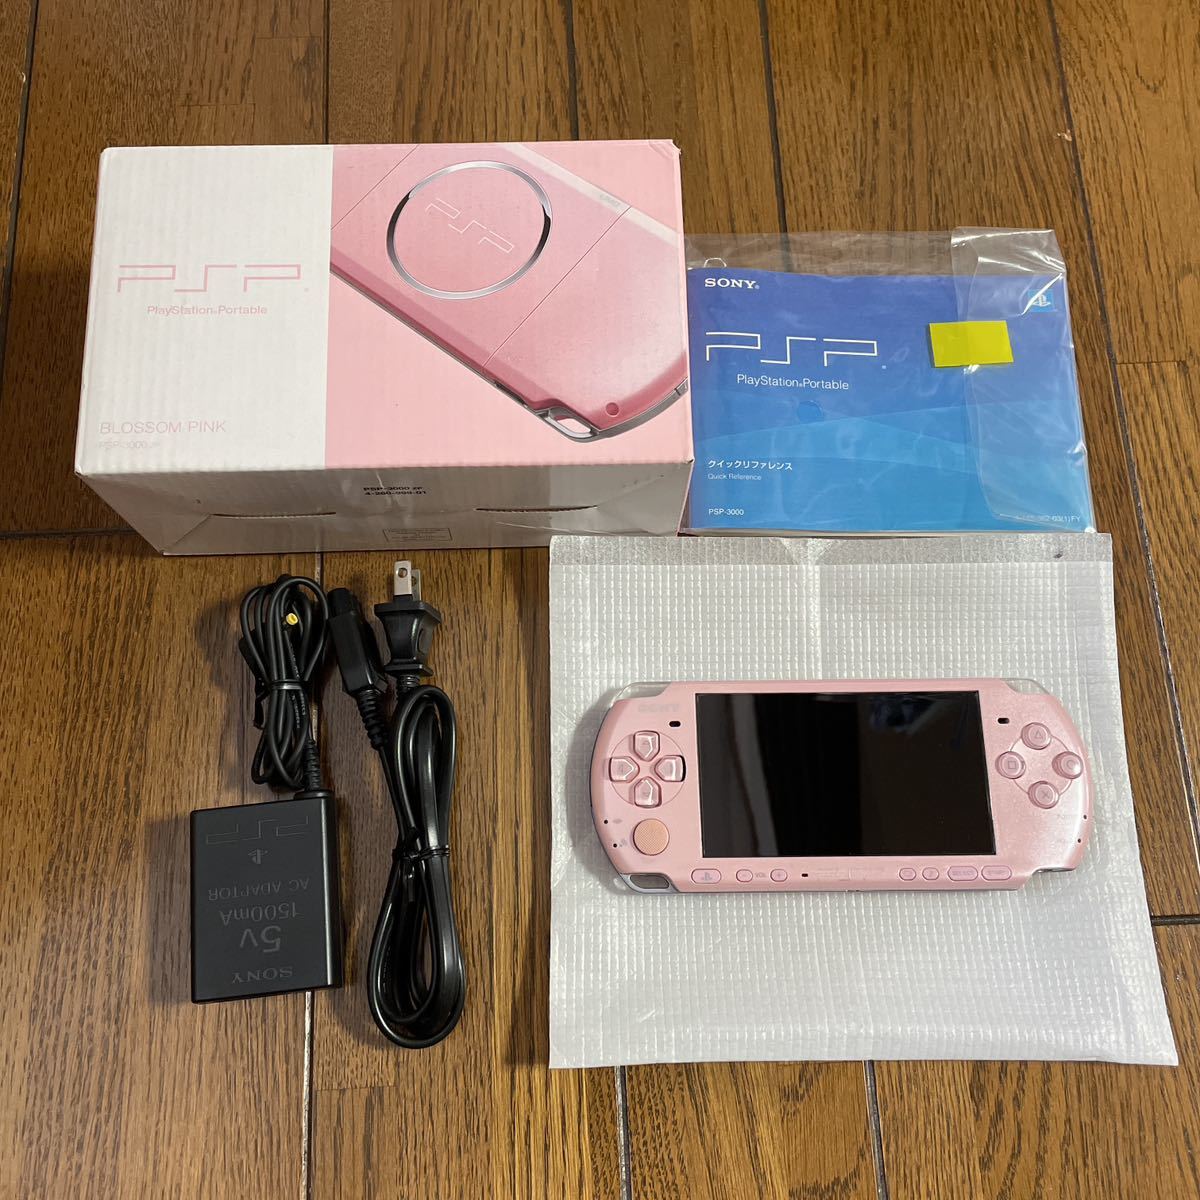 SONY PSP ブロッサム・ピンク PSP-3000 ZP 本体のみ [管理:40310615